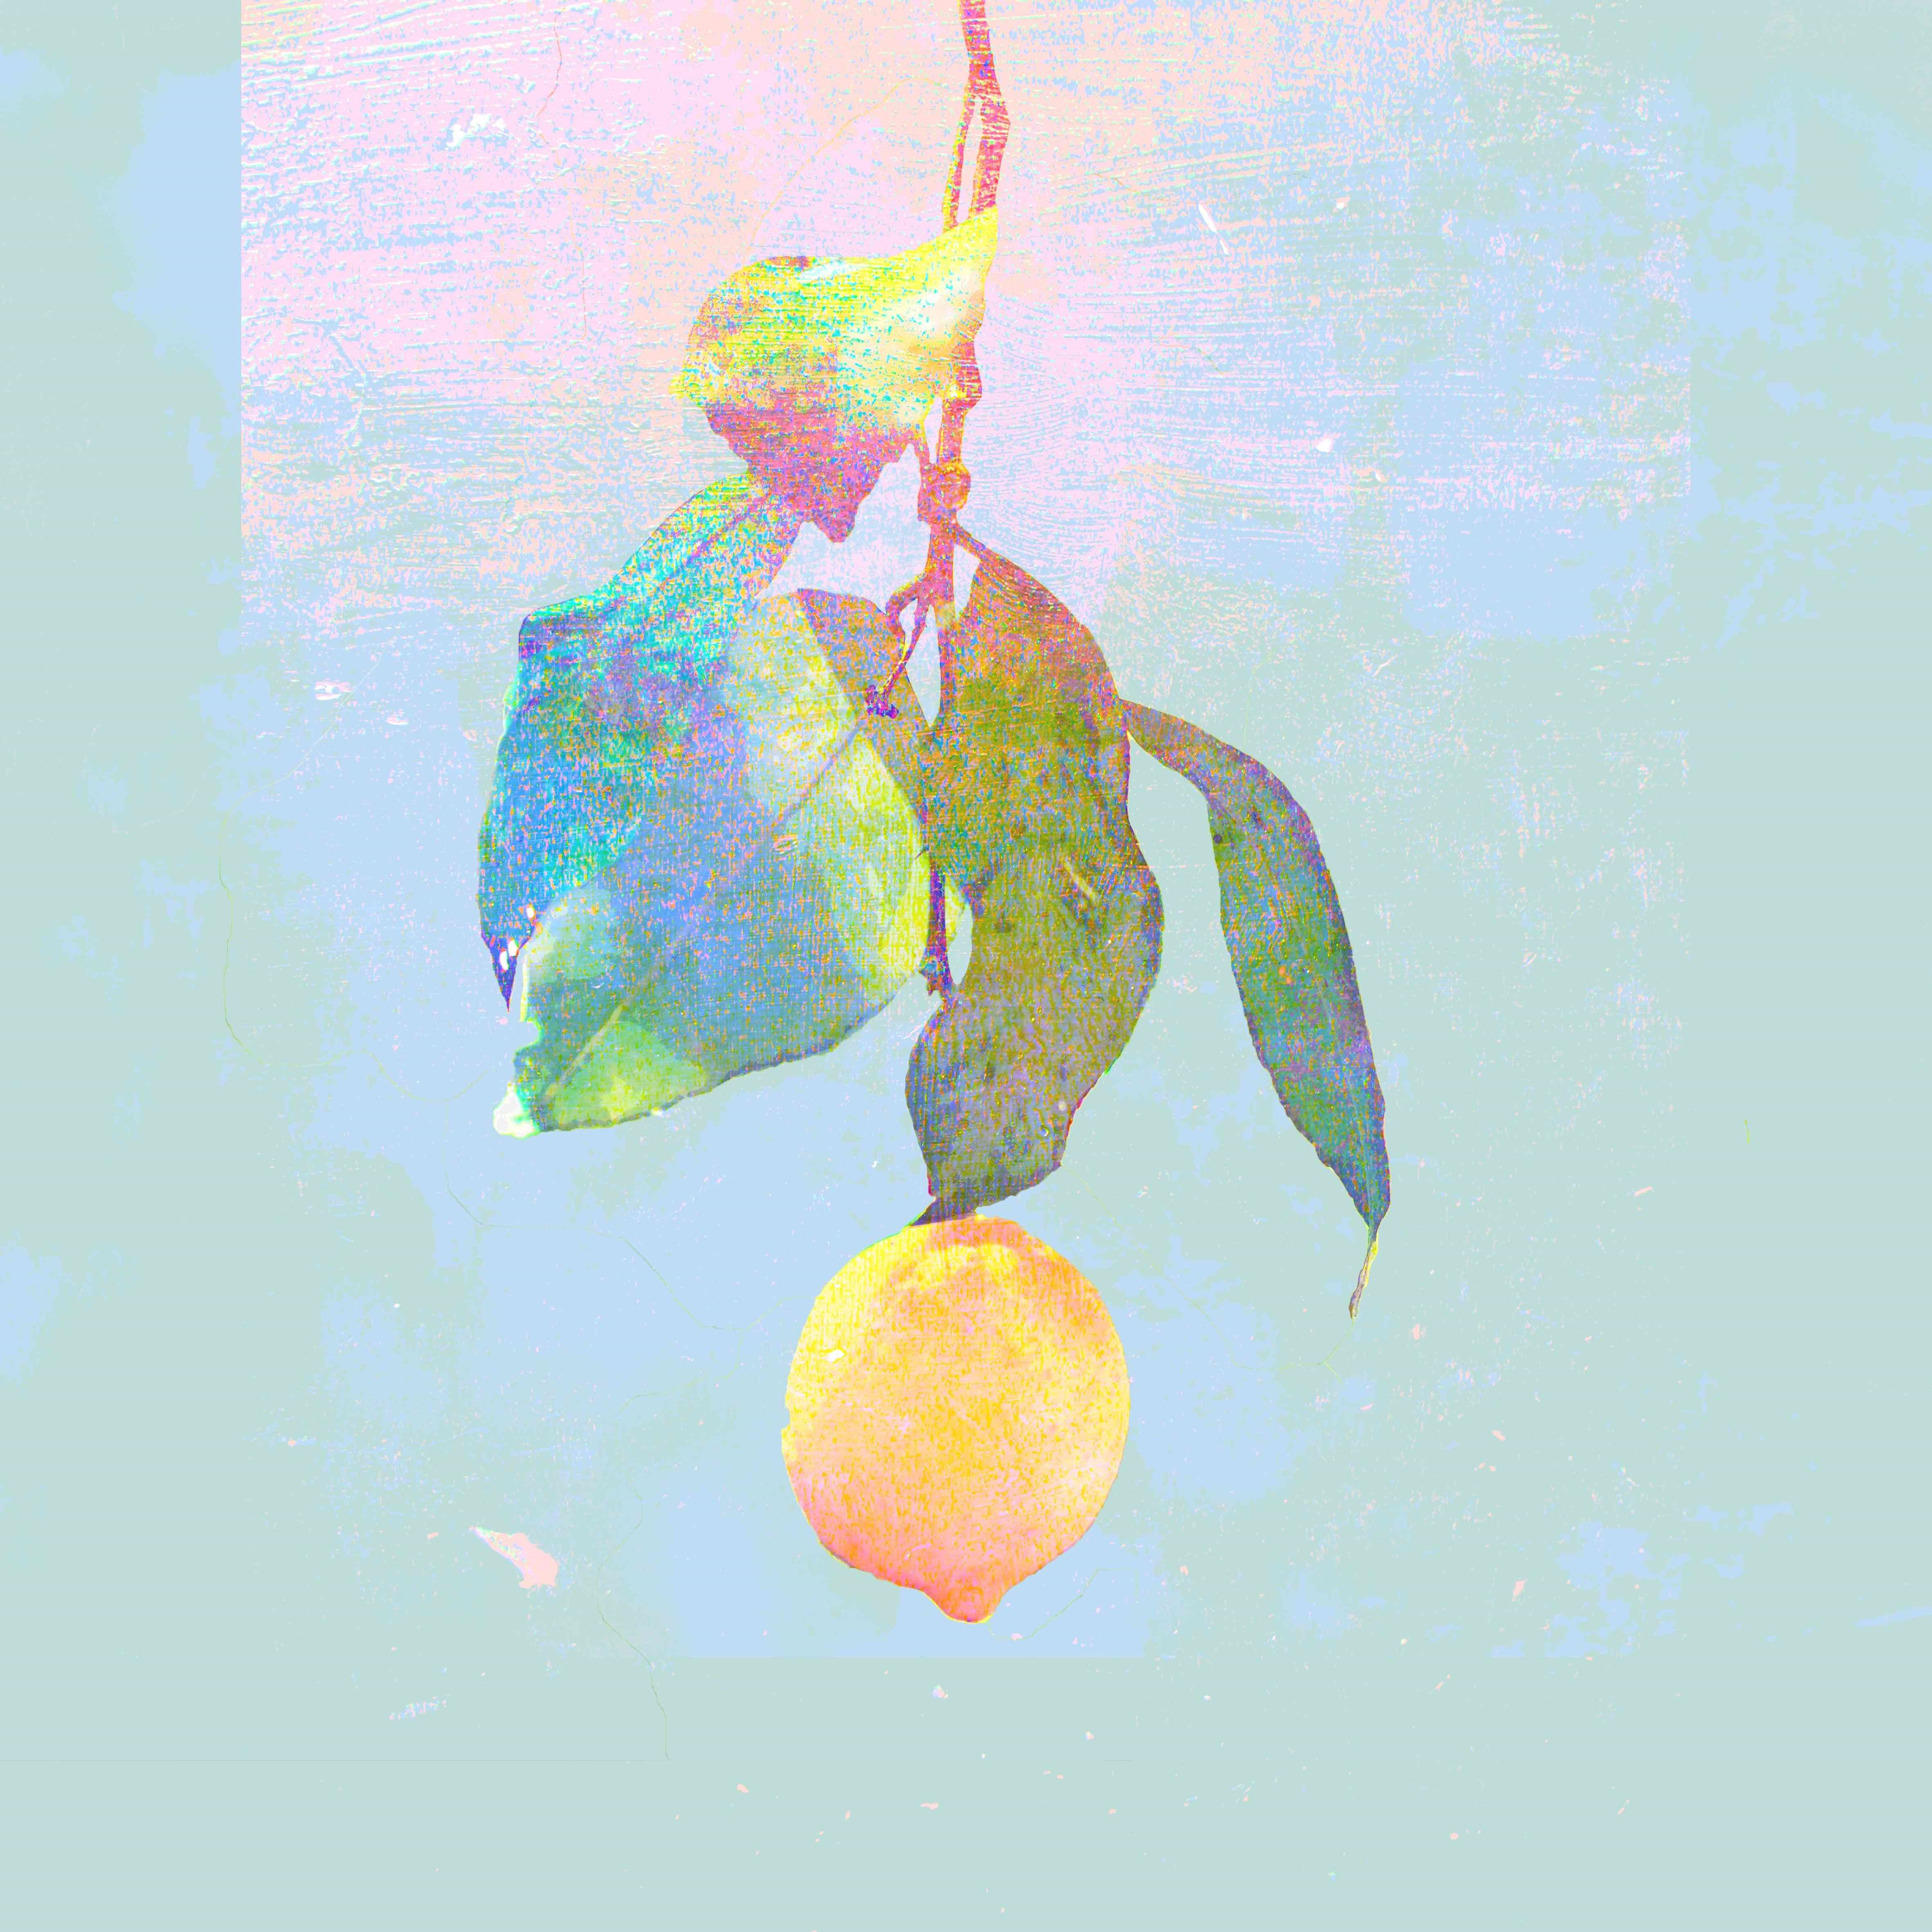 米津玄師 (よねづけんし) 8thシングル『Lemon (レモン)』(2018年3月14日発売) 高画質CDジャケット画像